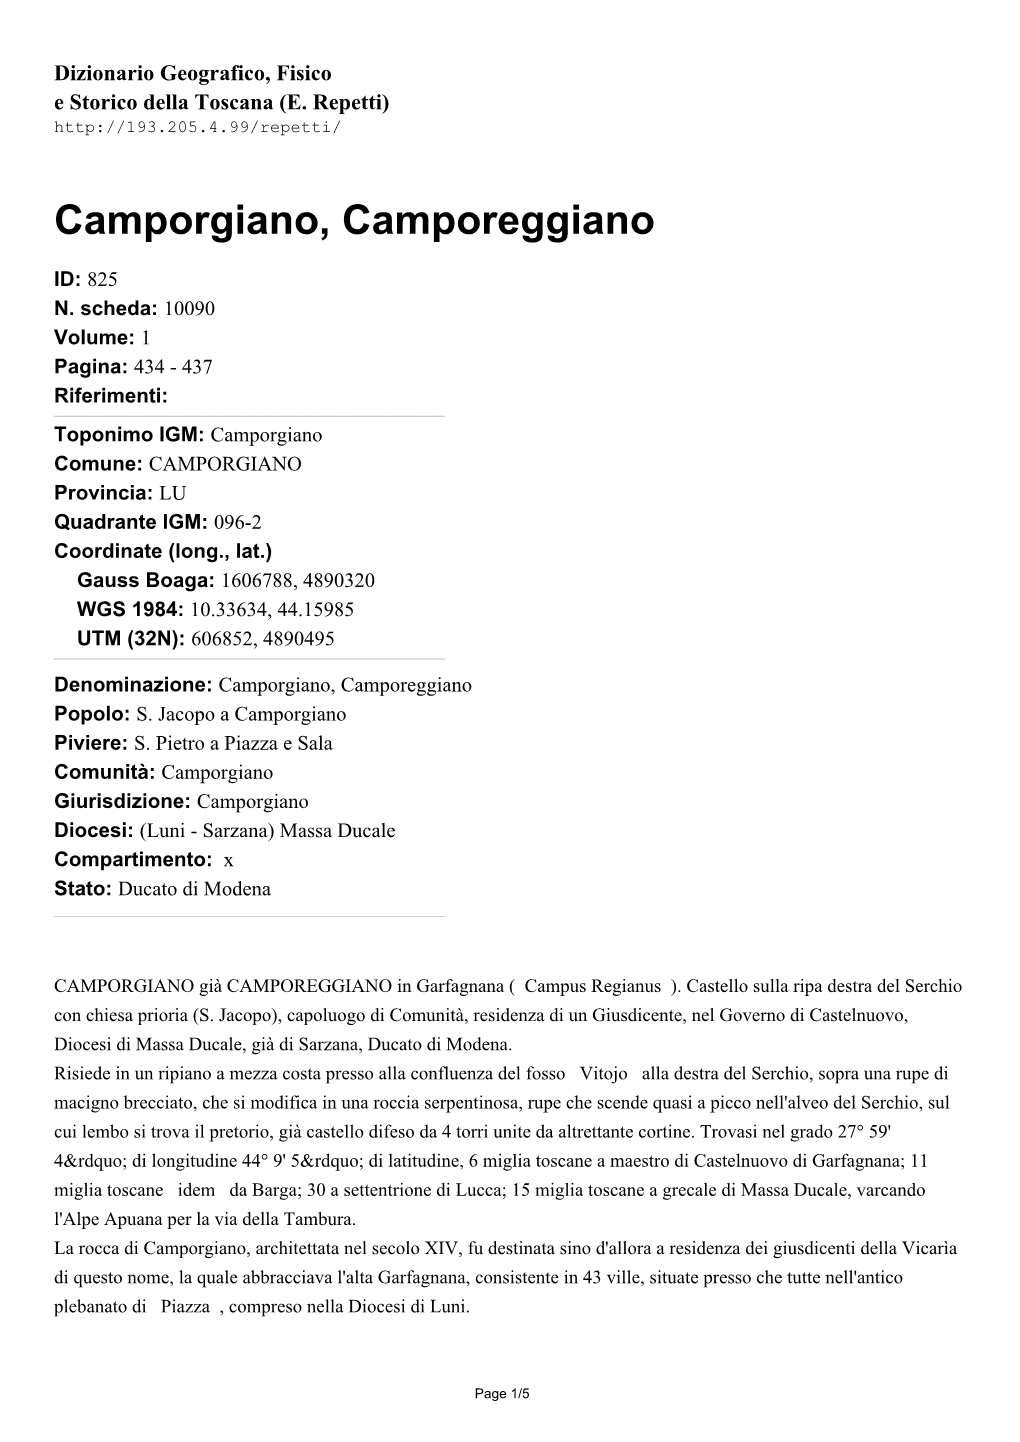 Camporgiano, Camporeggiano